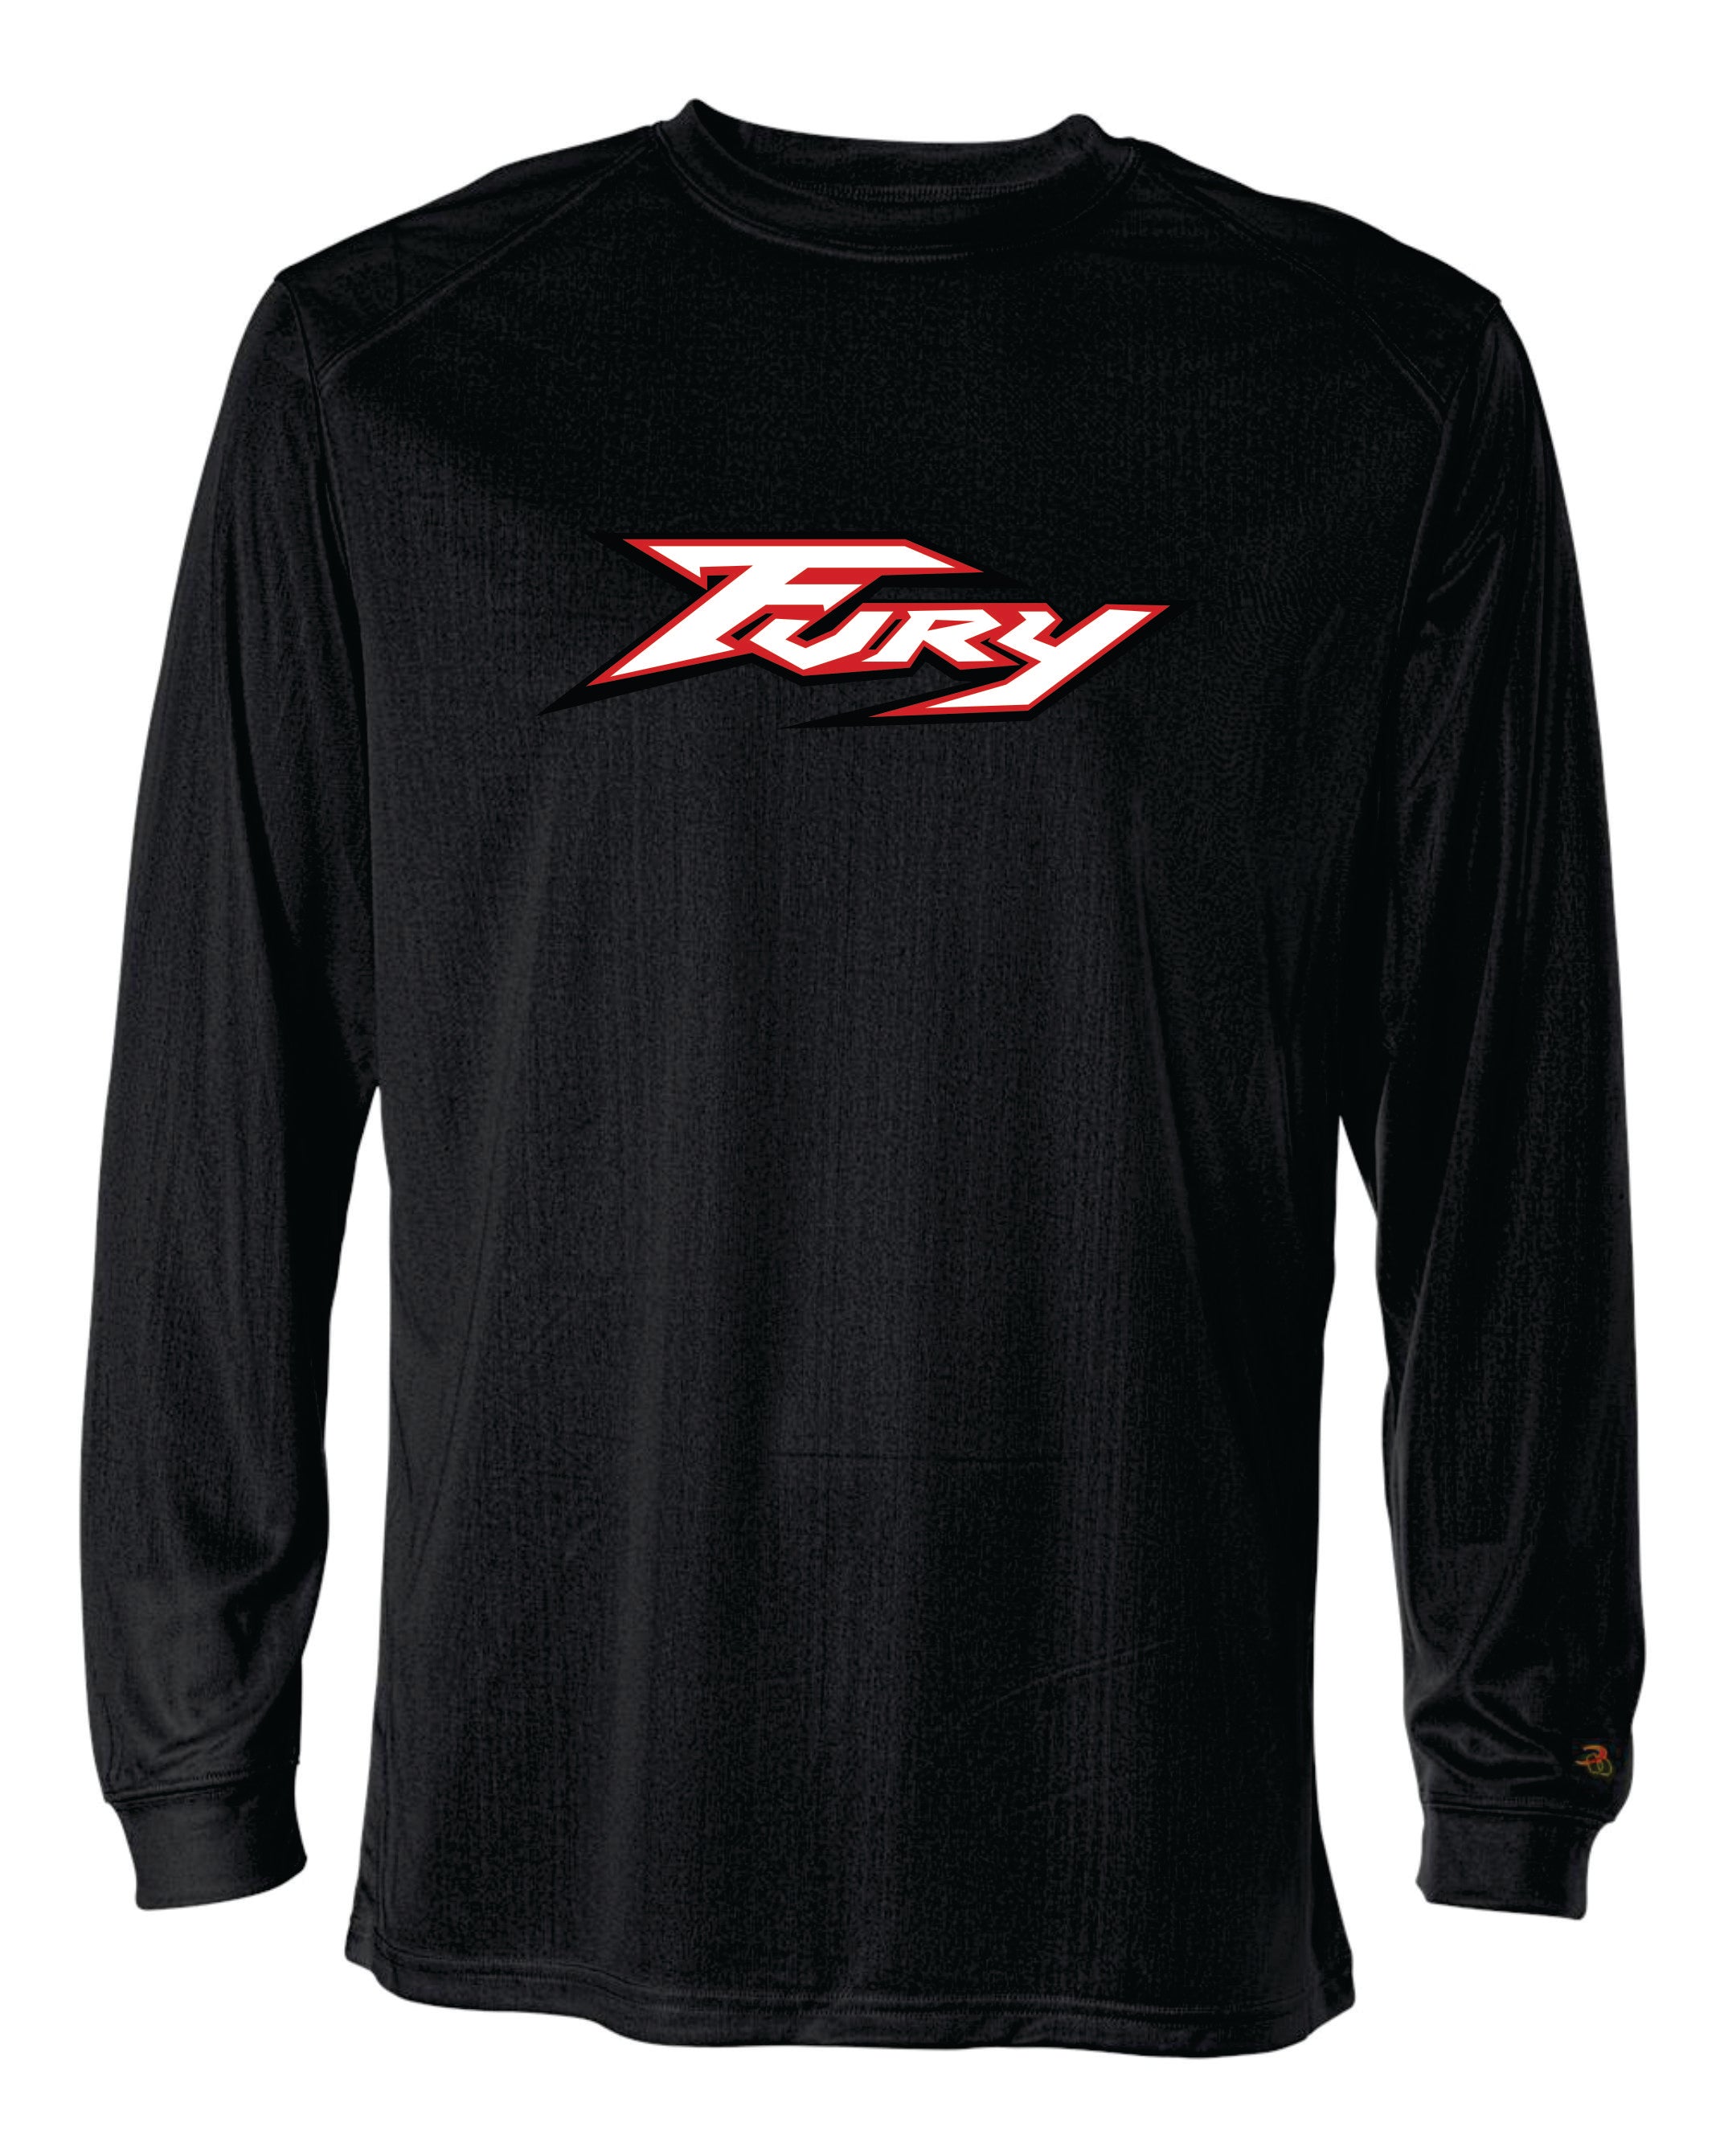 Fury Long Sleeve Badger Dri Fit Shirt